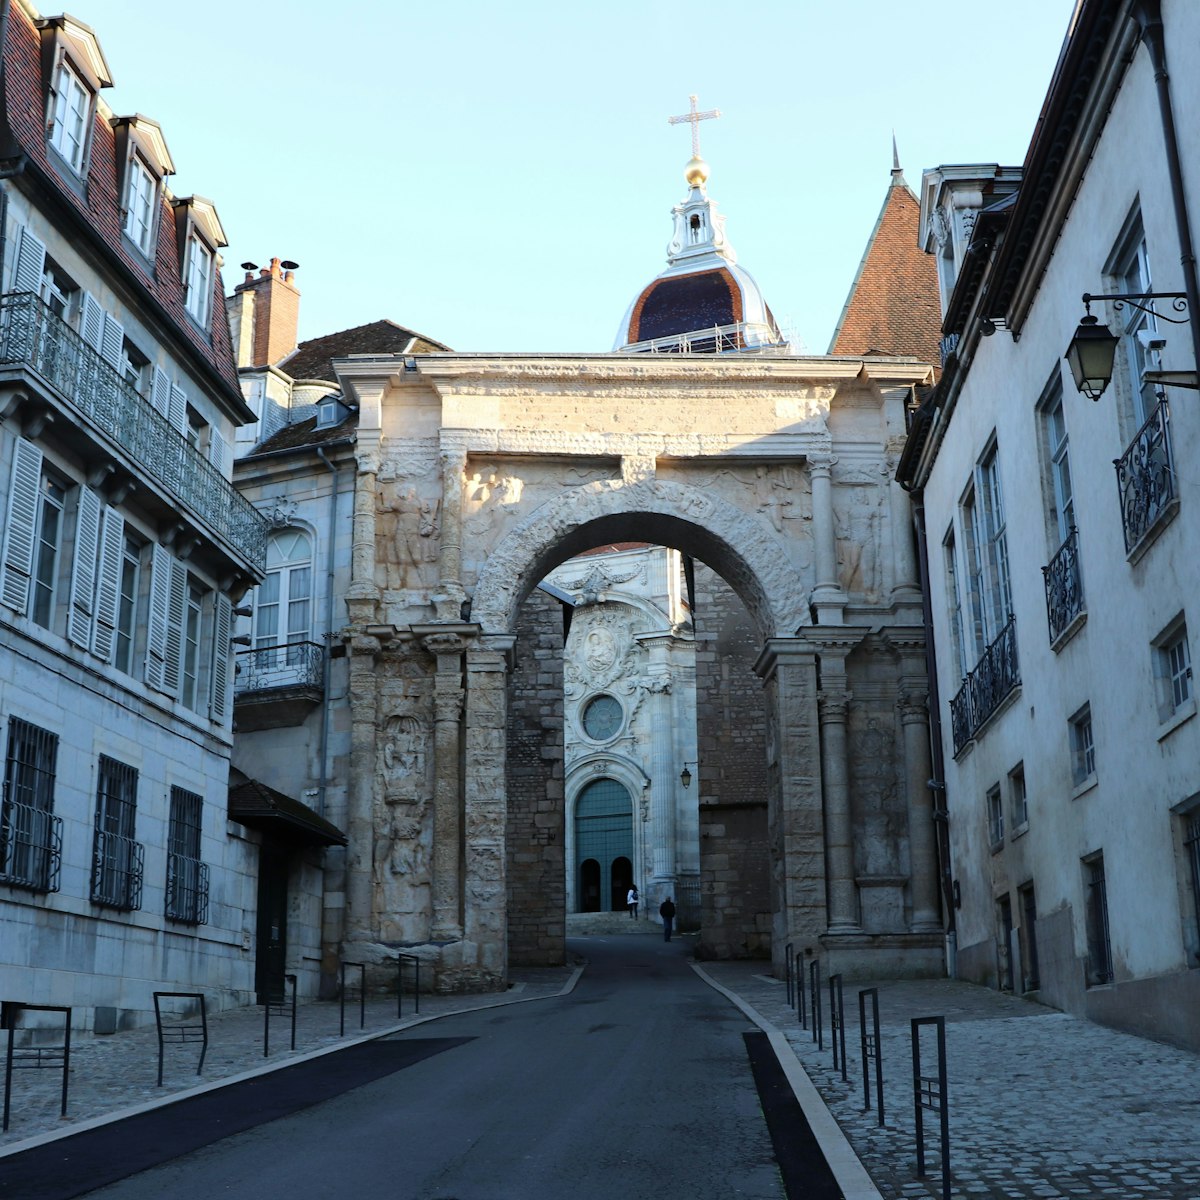 The black gate in Besançon.